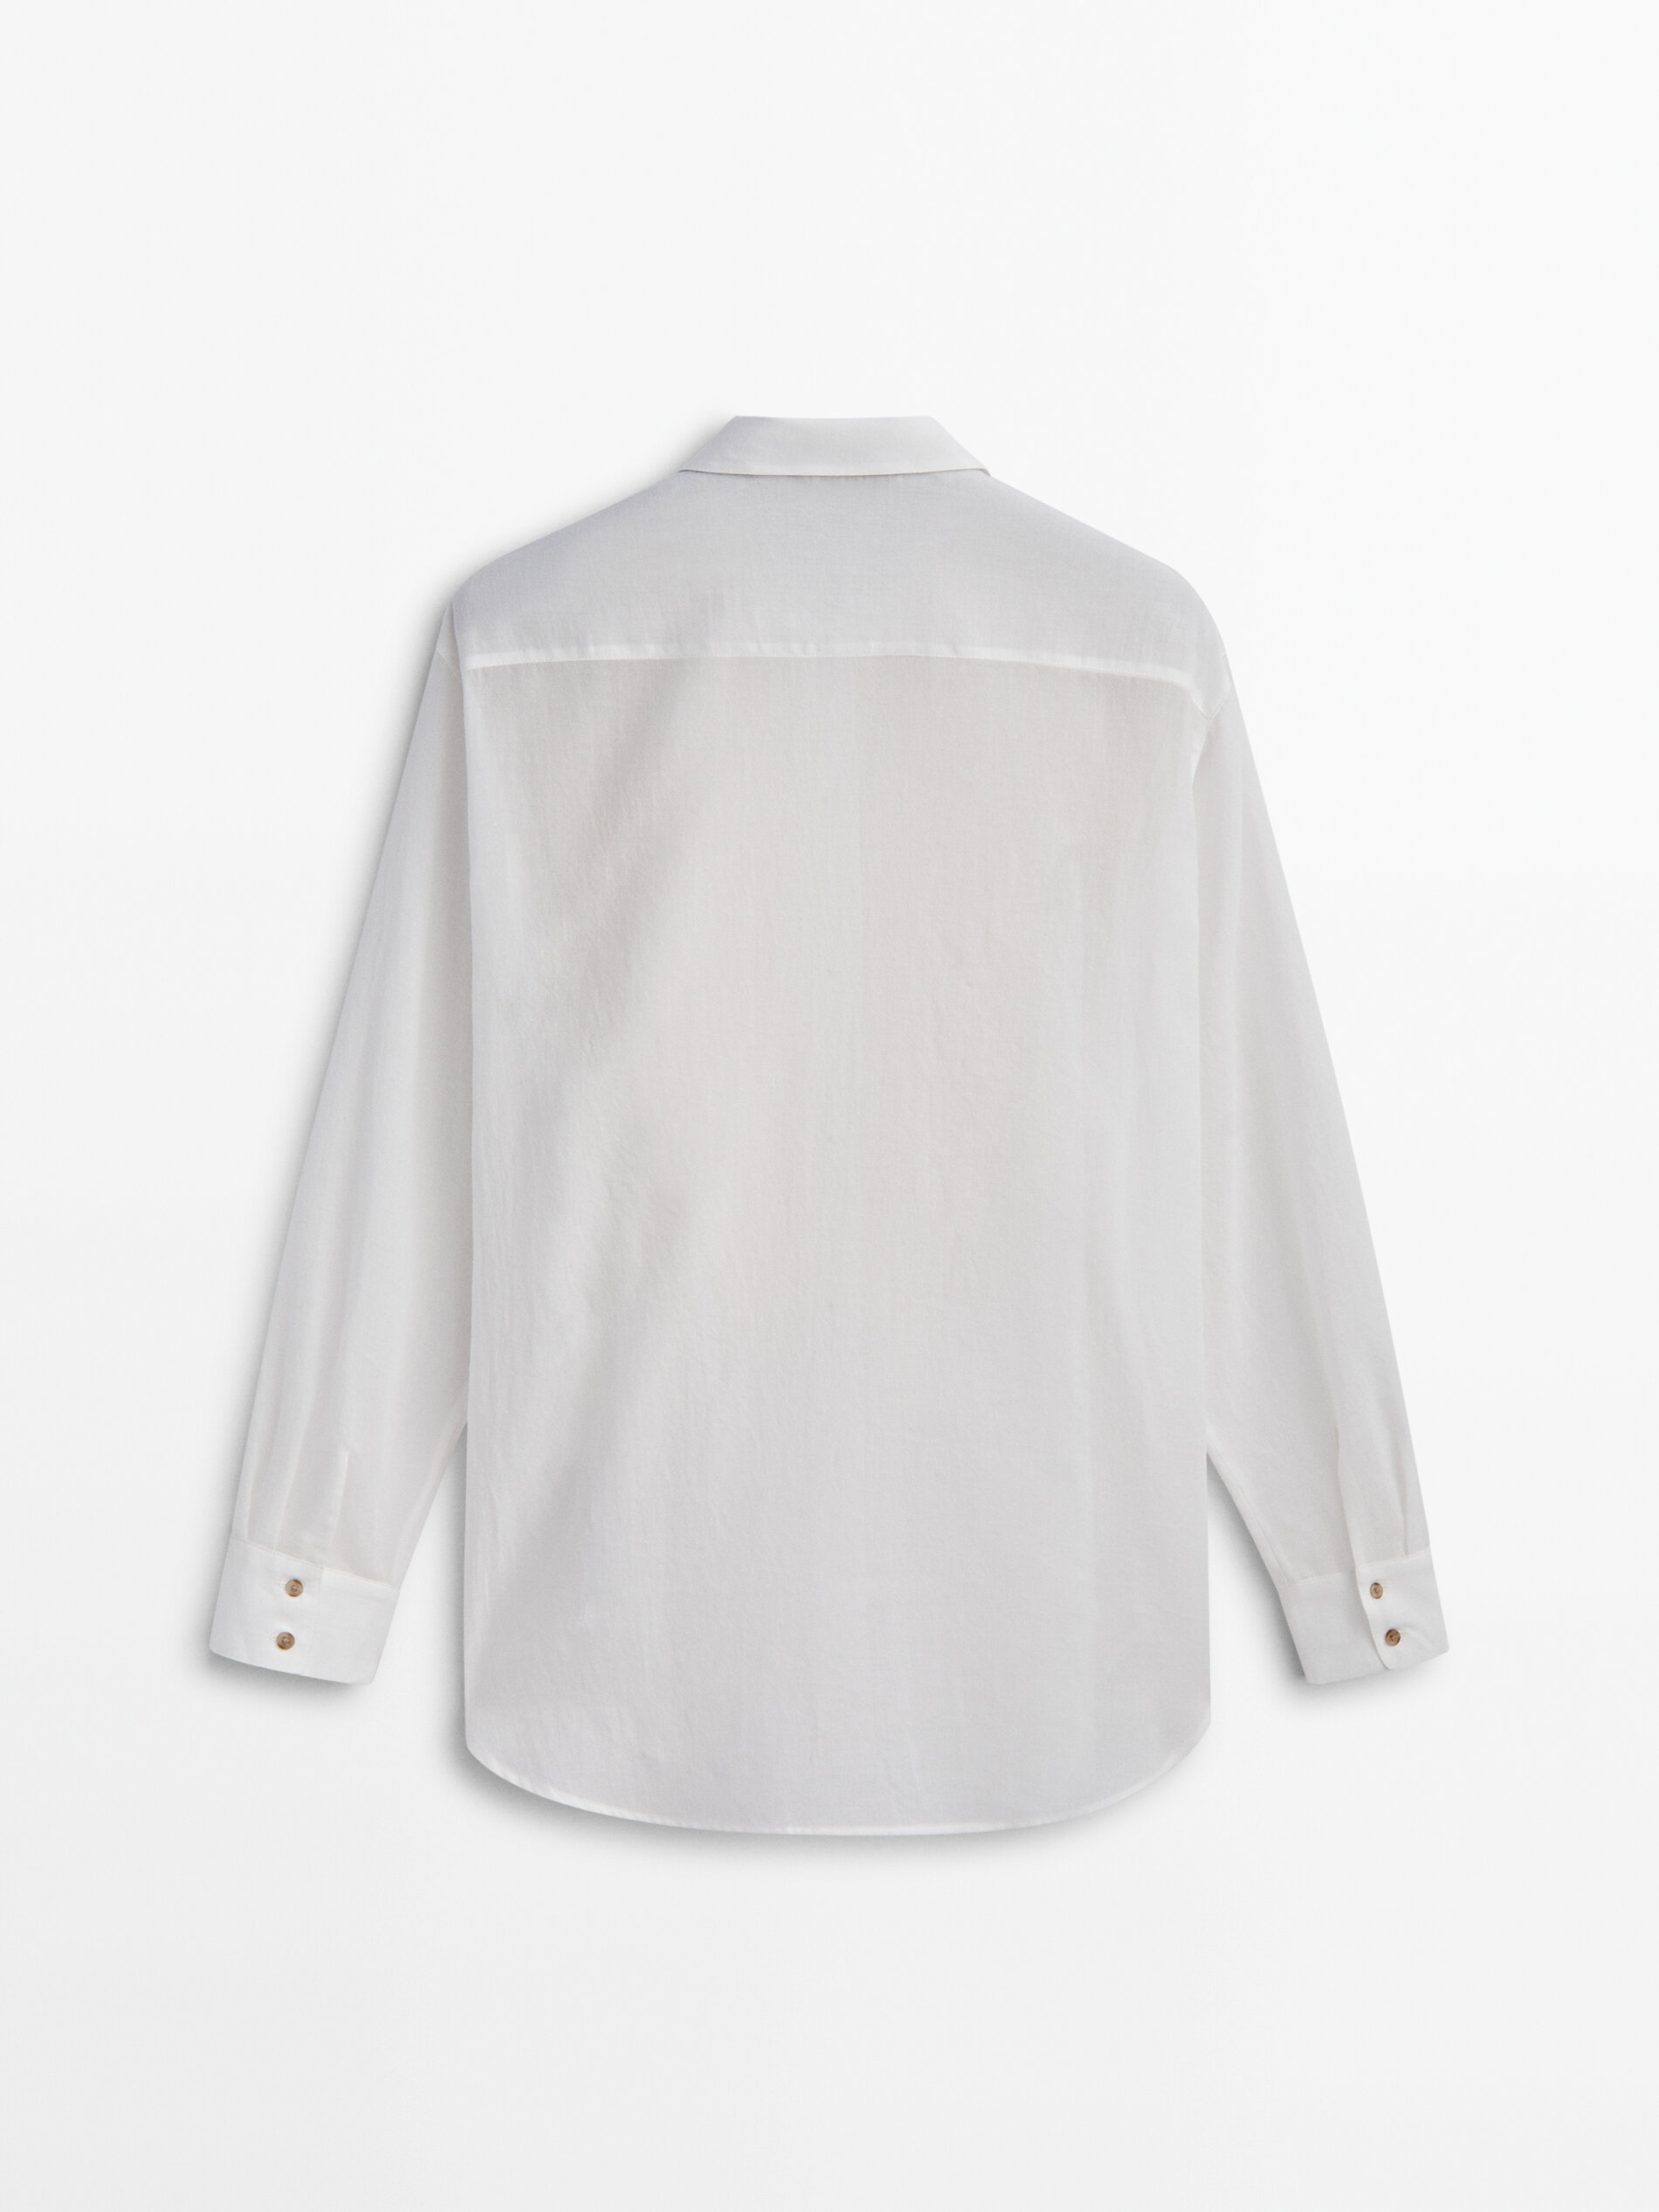 Camisa semitransparente detalle pechera